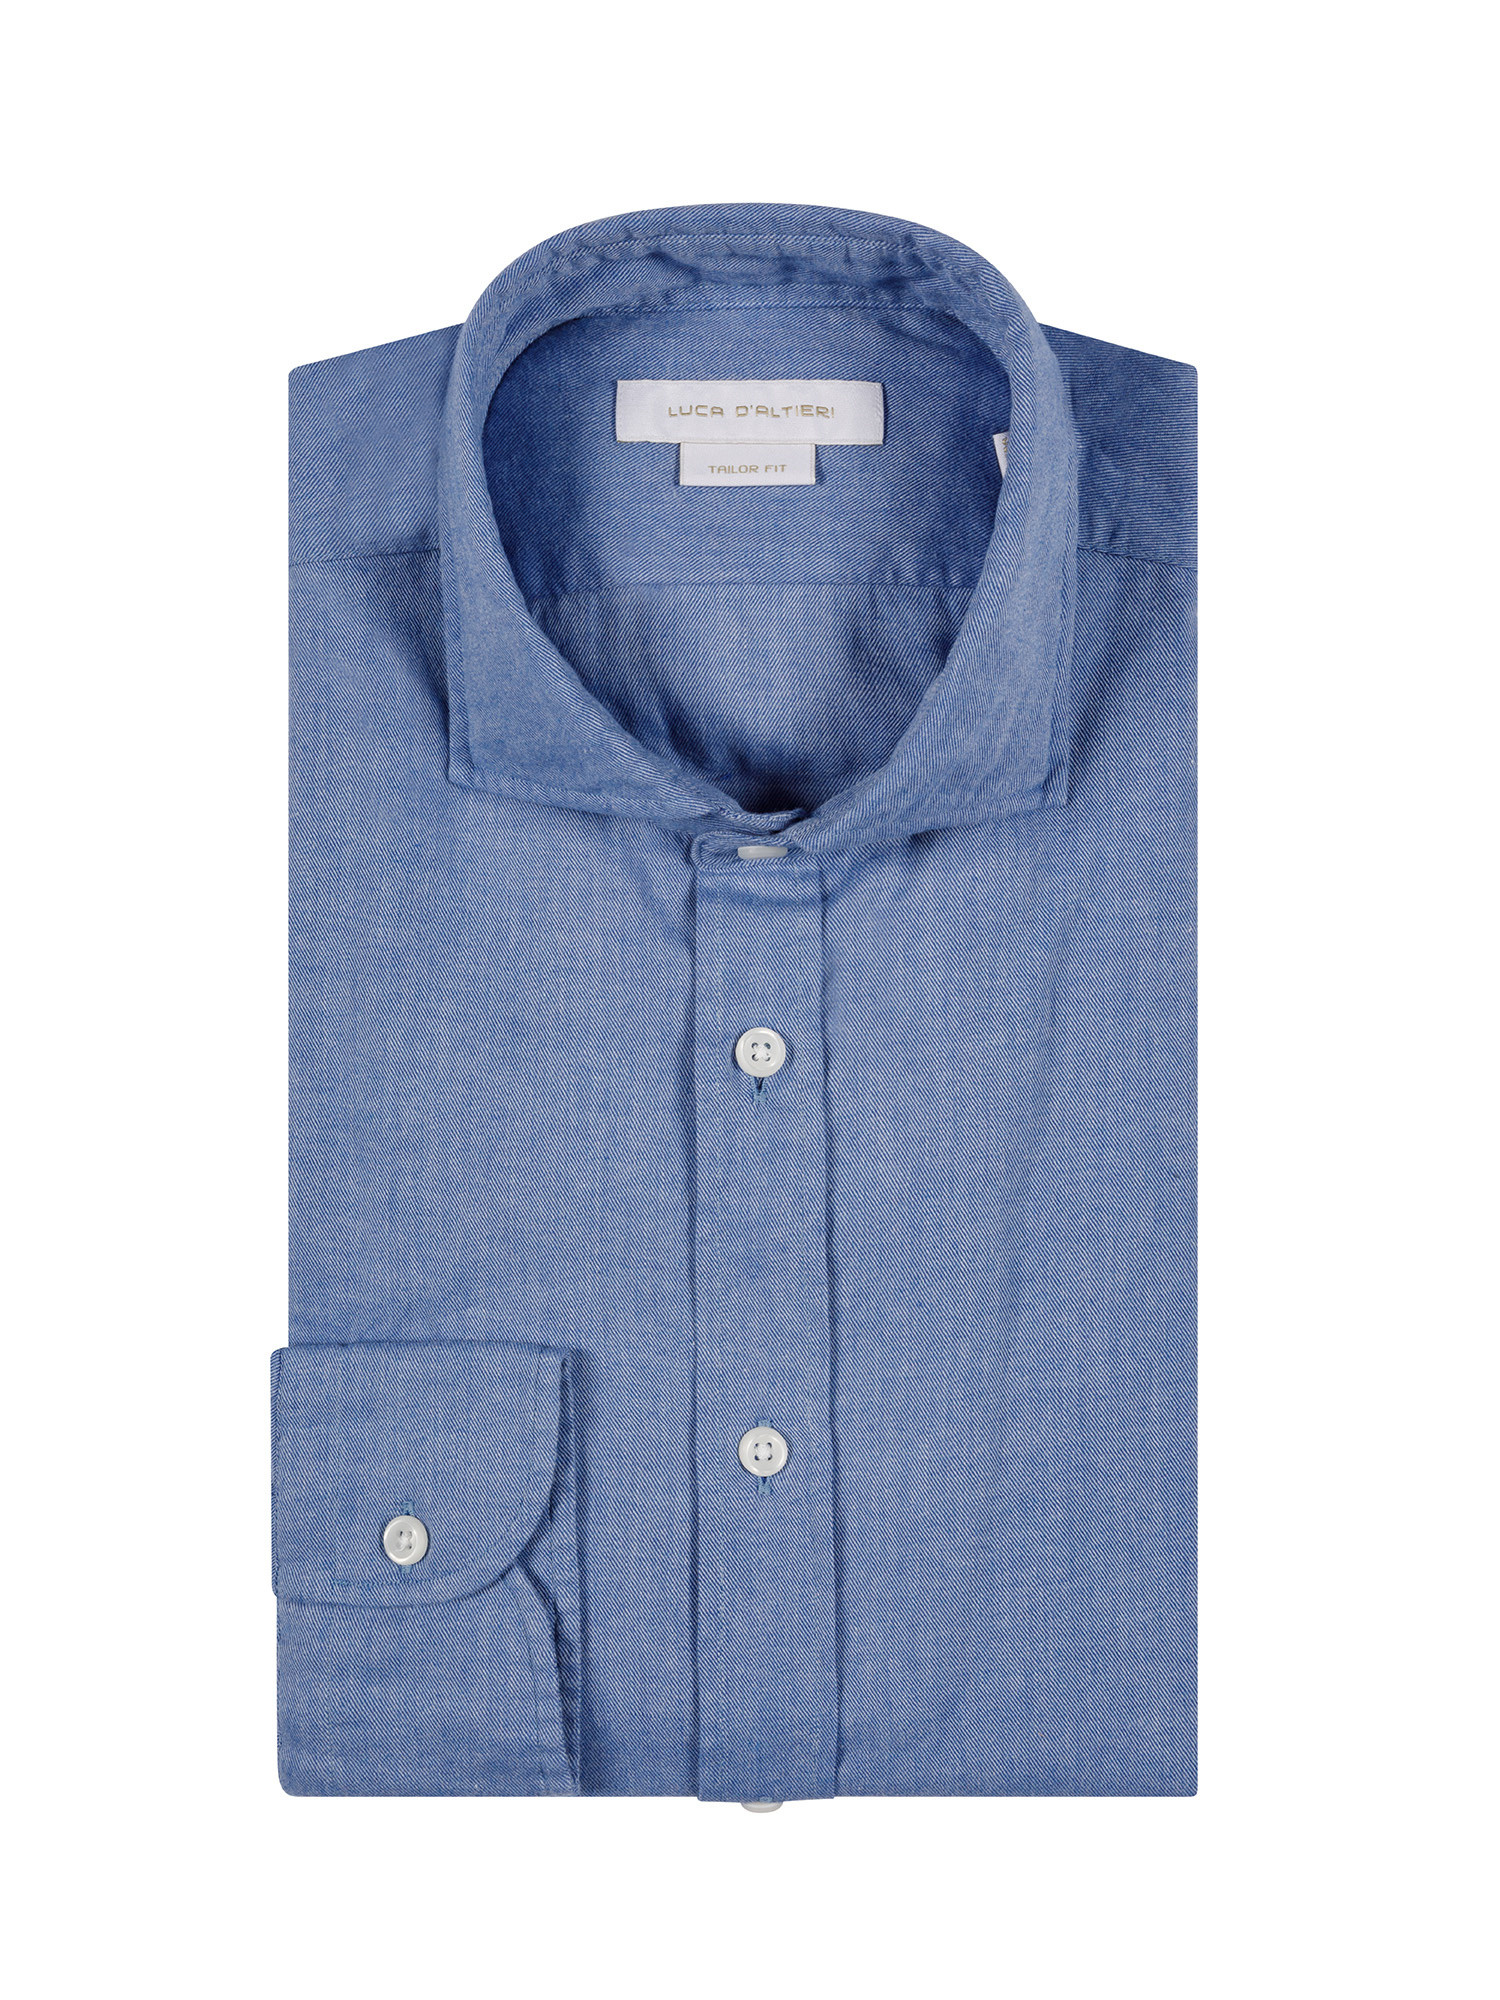 Camicia tailor fit in morbida flanella di cotone organico, Azzurro, large image number 2